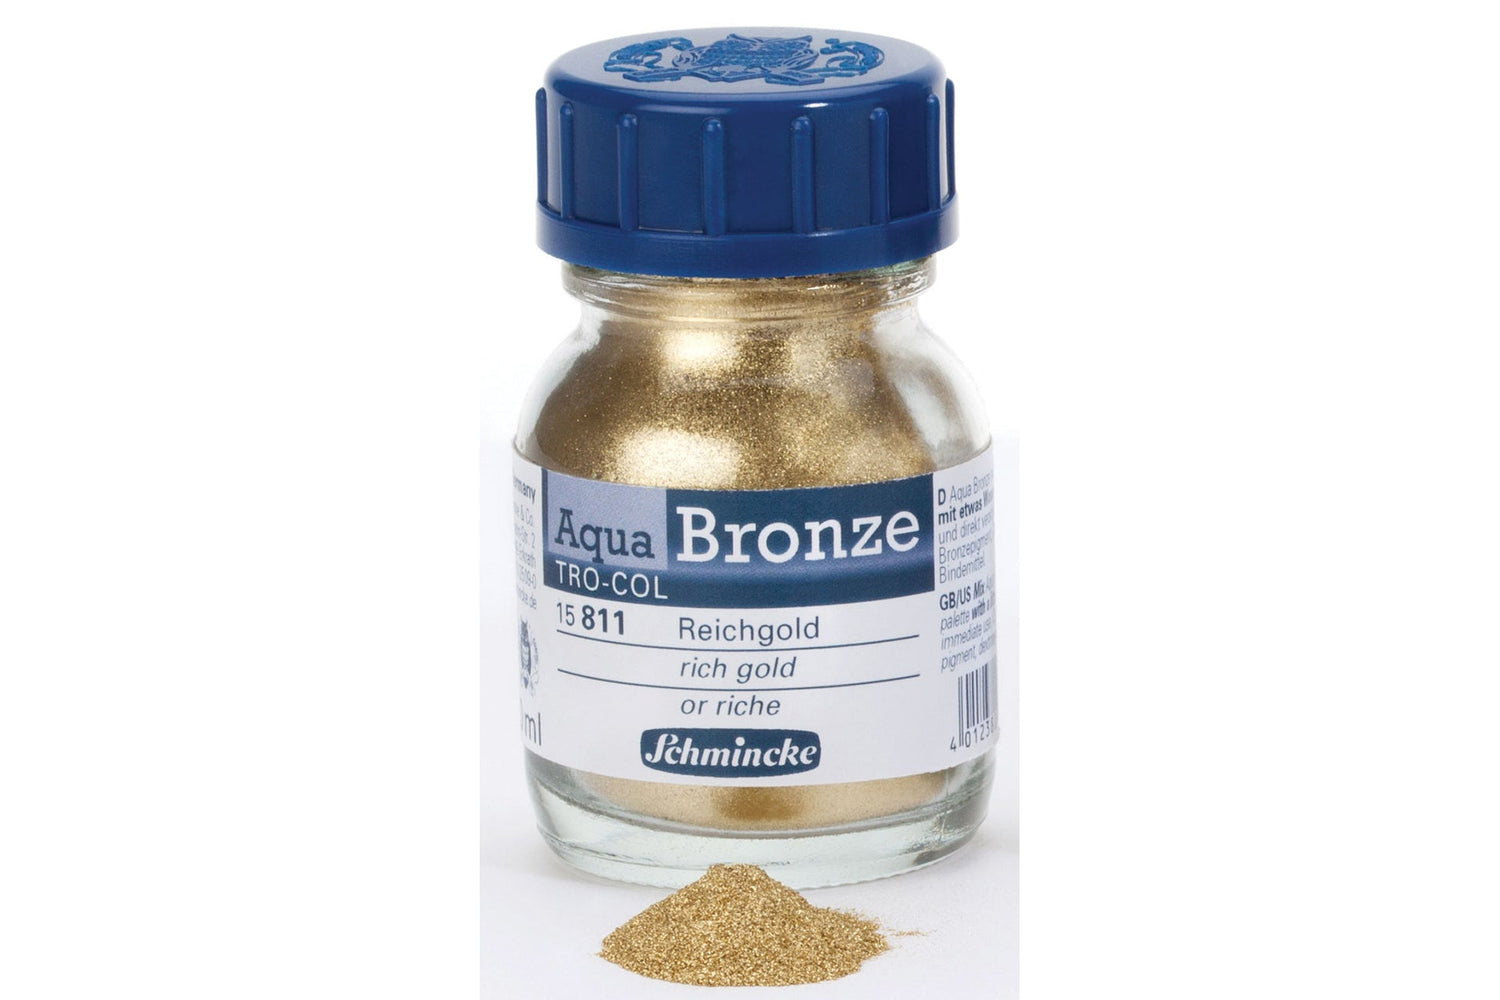 Schmincke Aqua Bronze Pigment 20ml 811 Rich Gold - theartshop.com.au